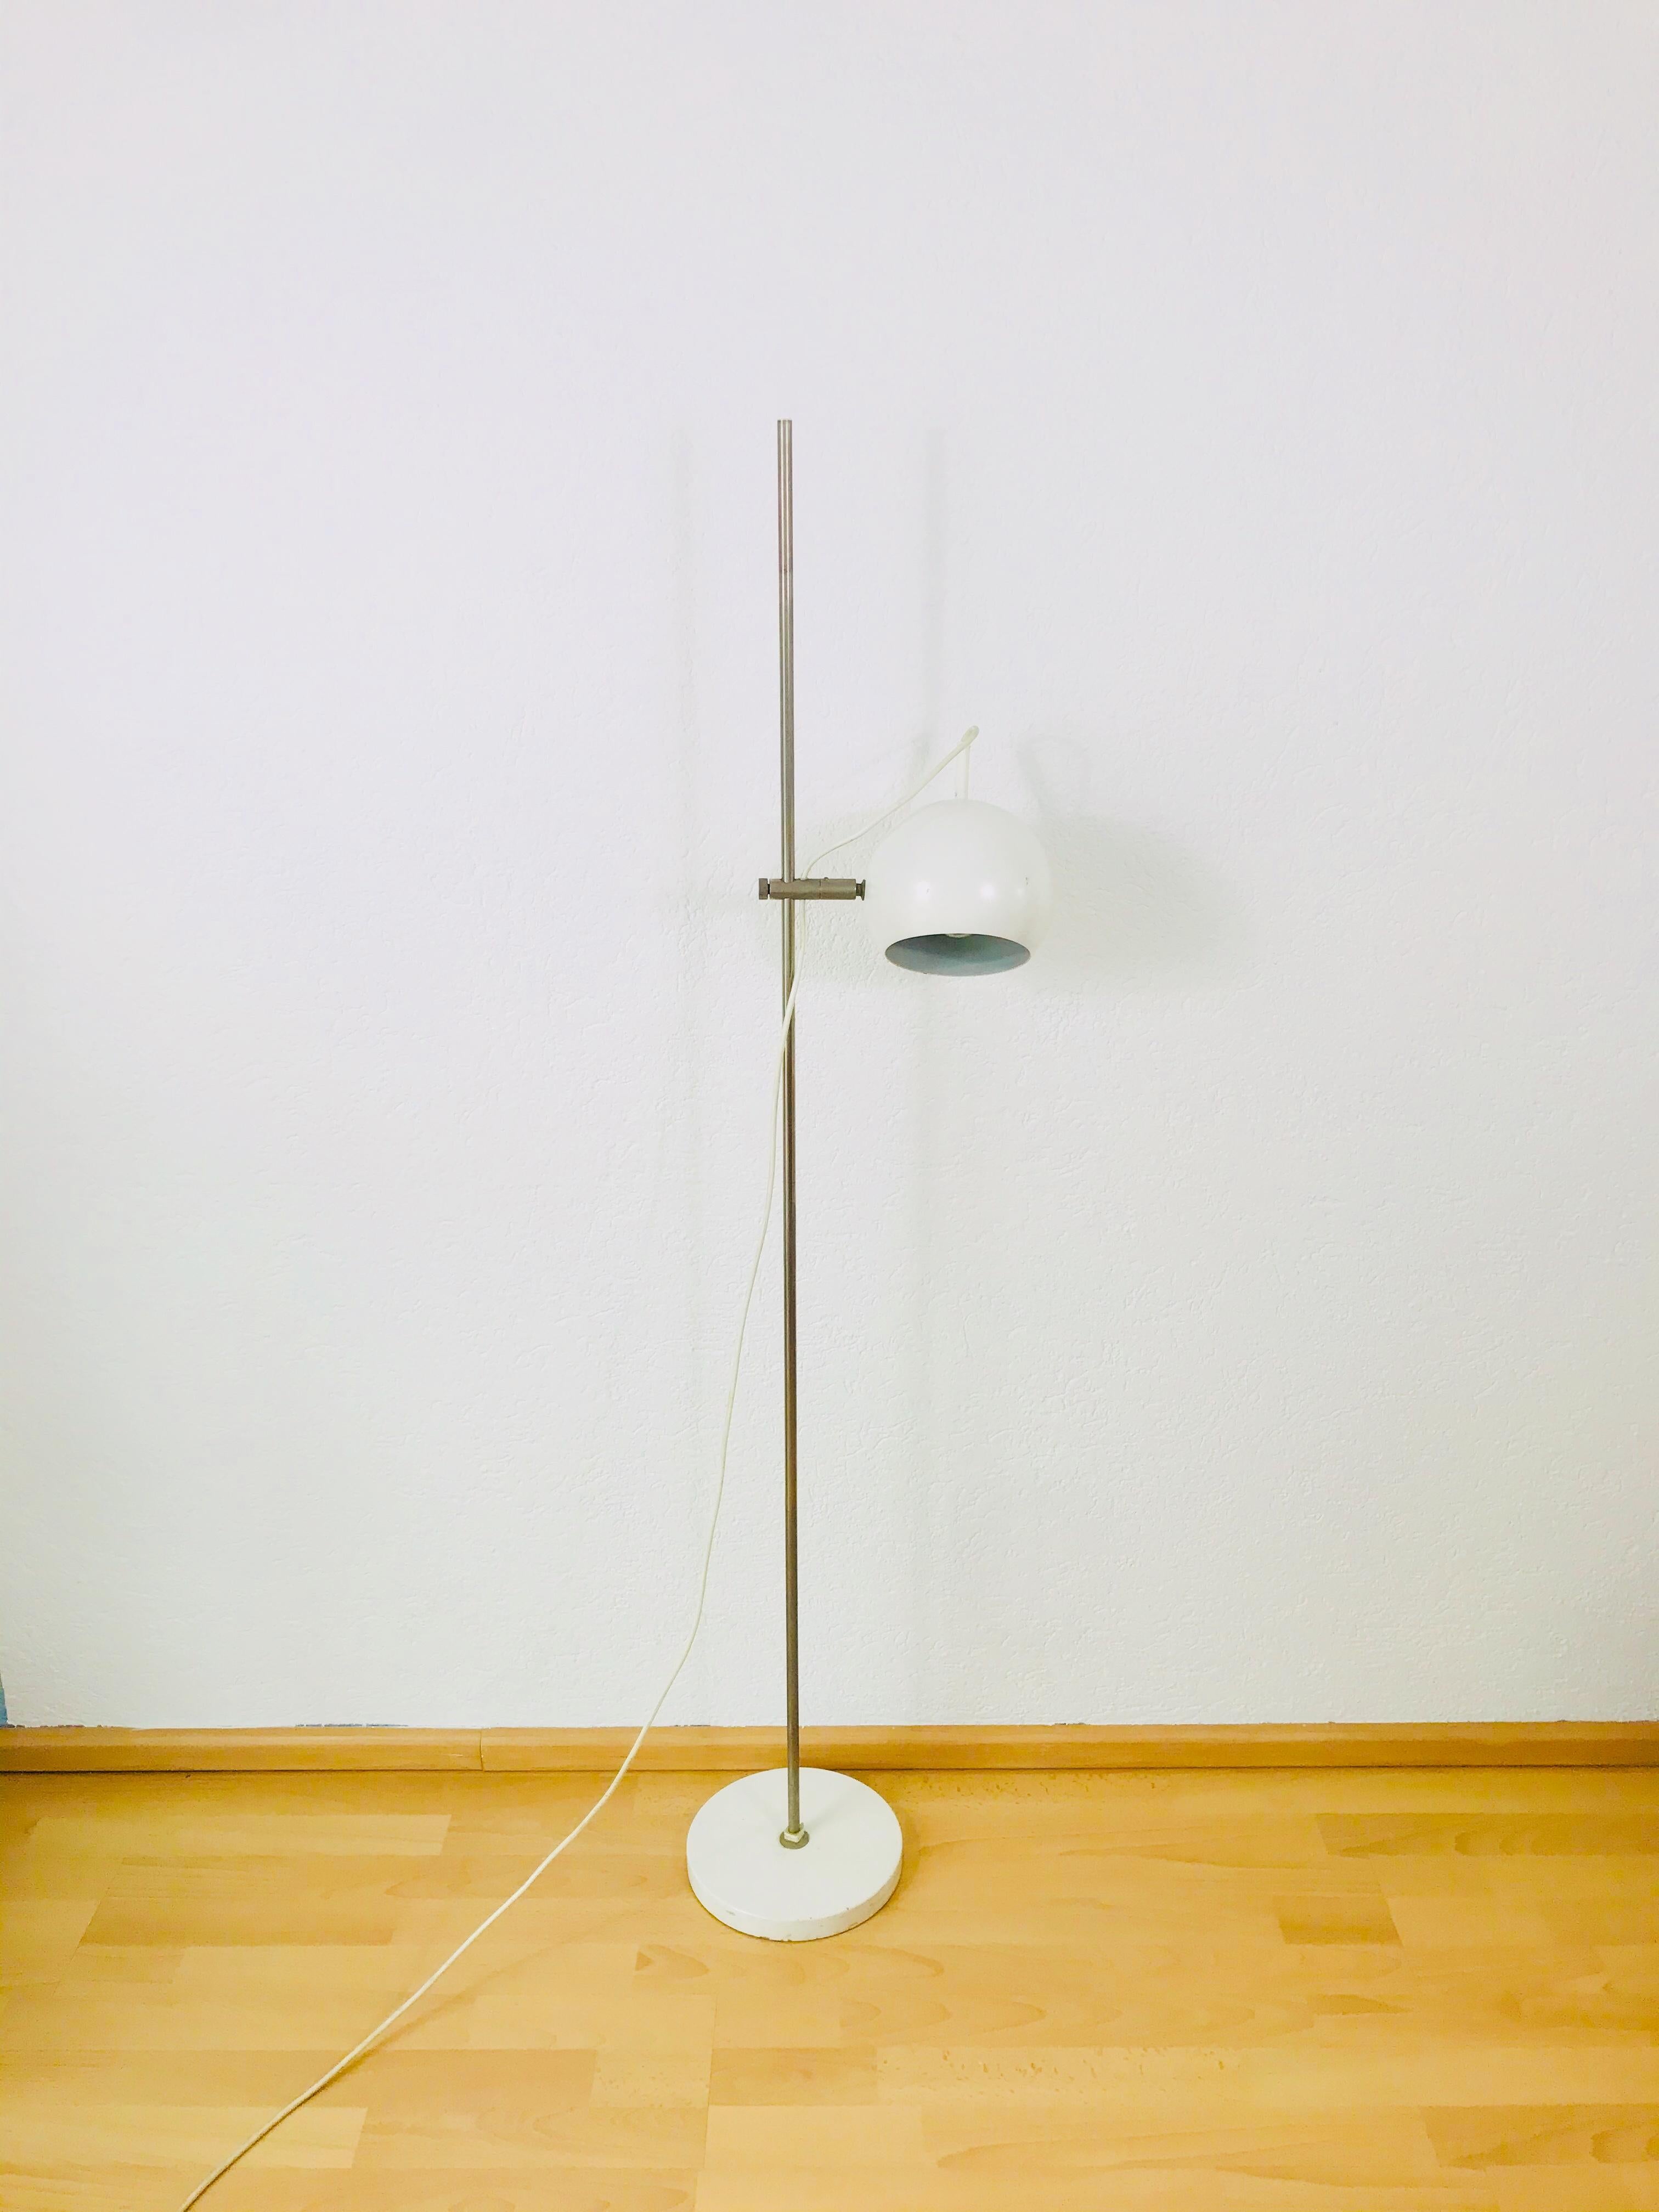 Lampadaire italien dans le style du designer Joe Colombo.


Le luminaire nécessite une ampoule E27.